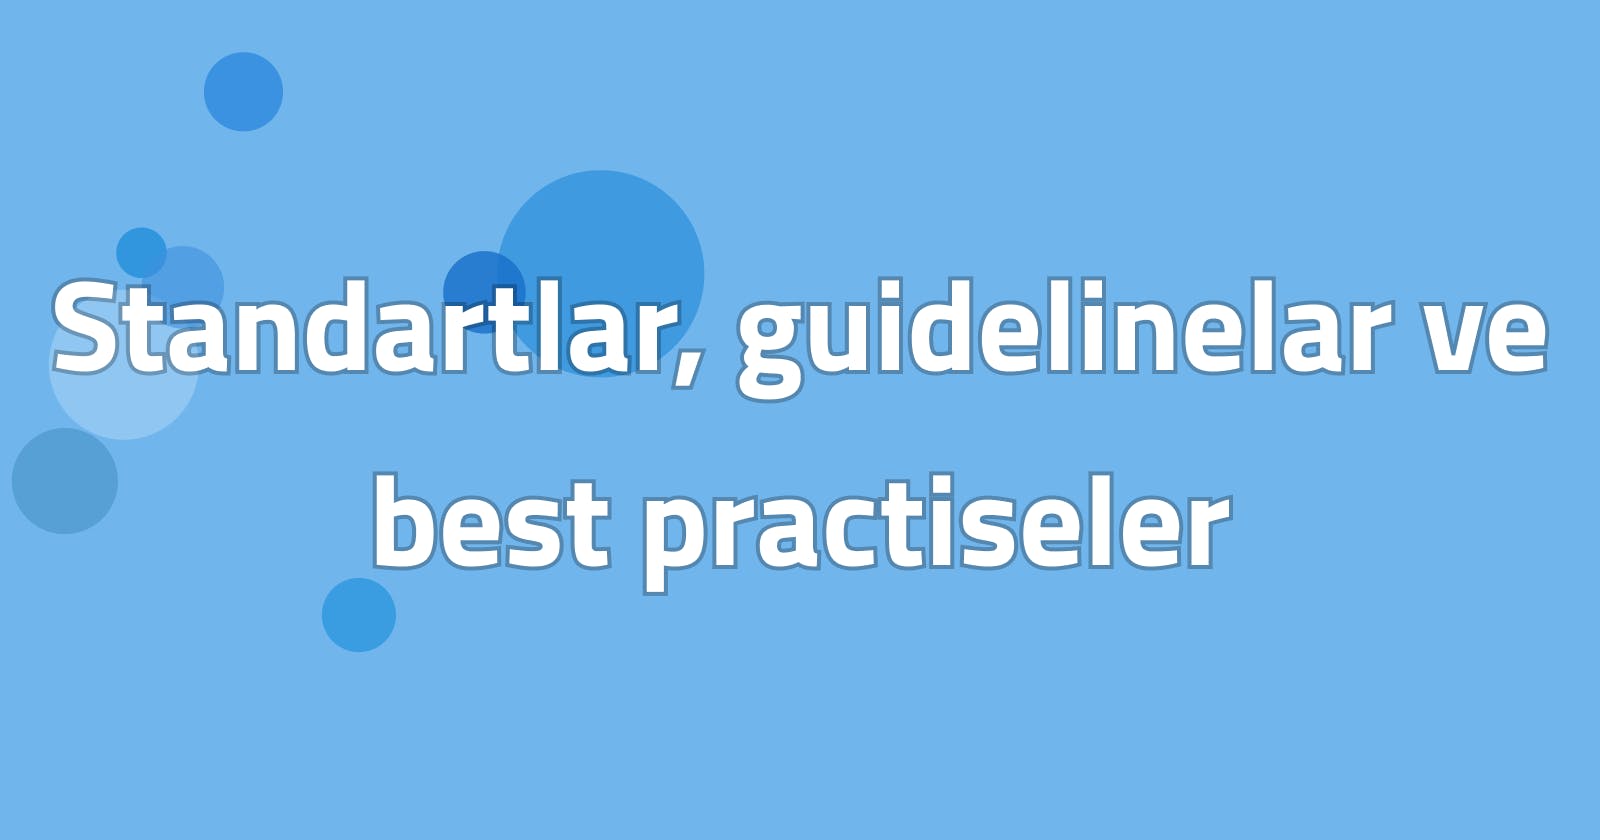 Standartlar, guidelinelar ve best practiseler